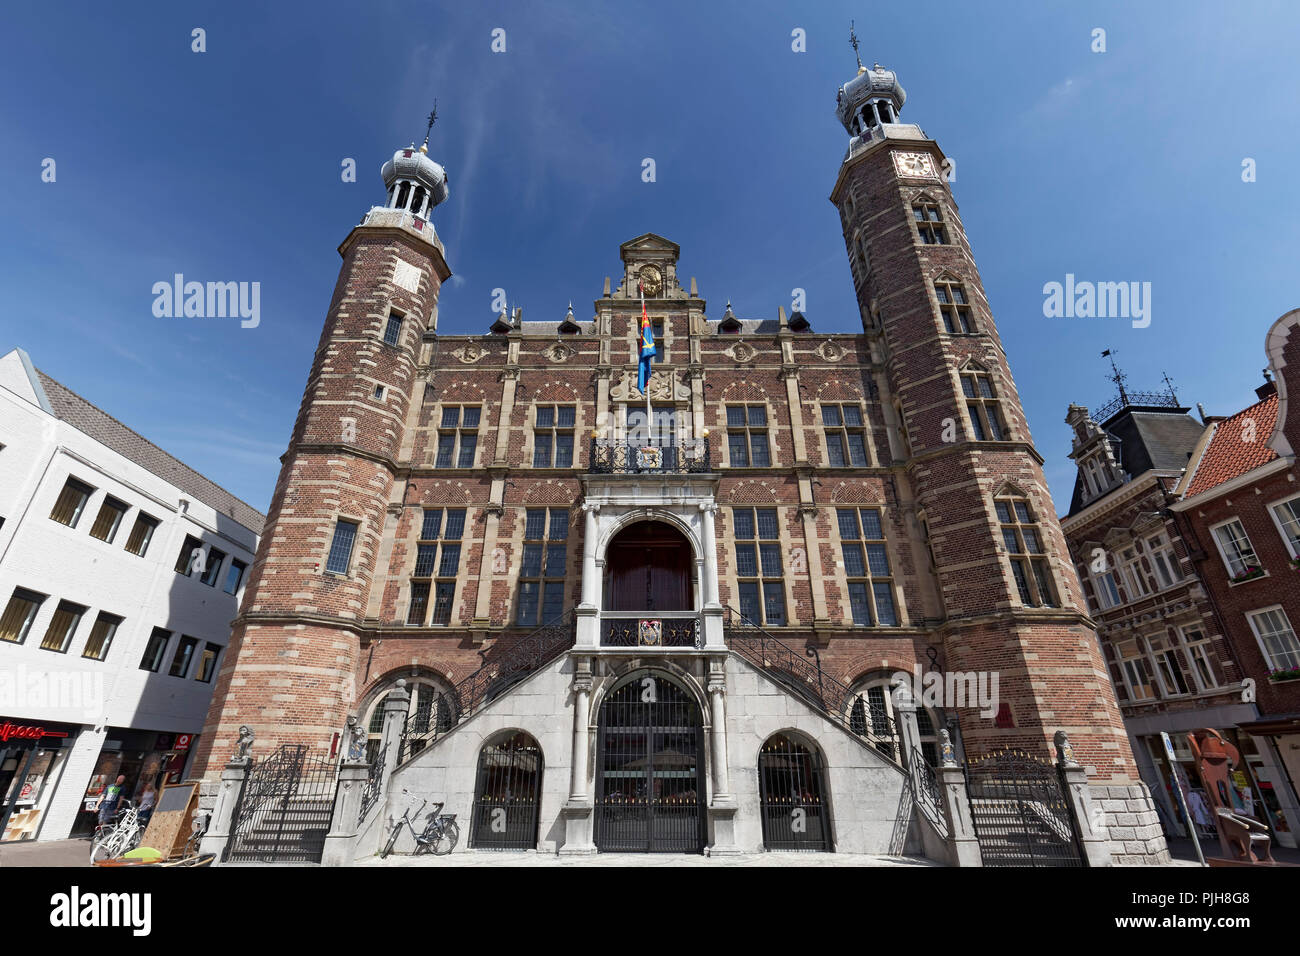 Hôtel de ville historique, Renaissance, Venlo, Limbourg, Pays-Bas Banque D'Images